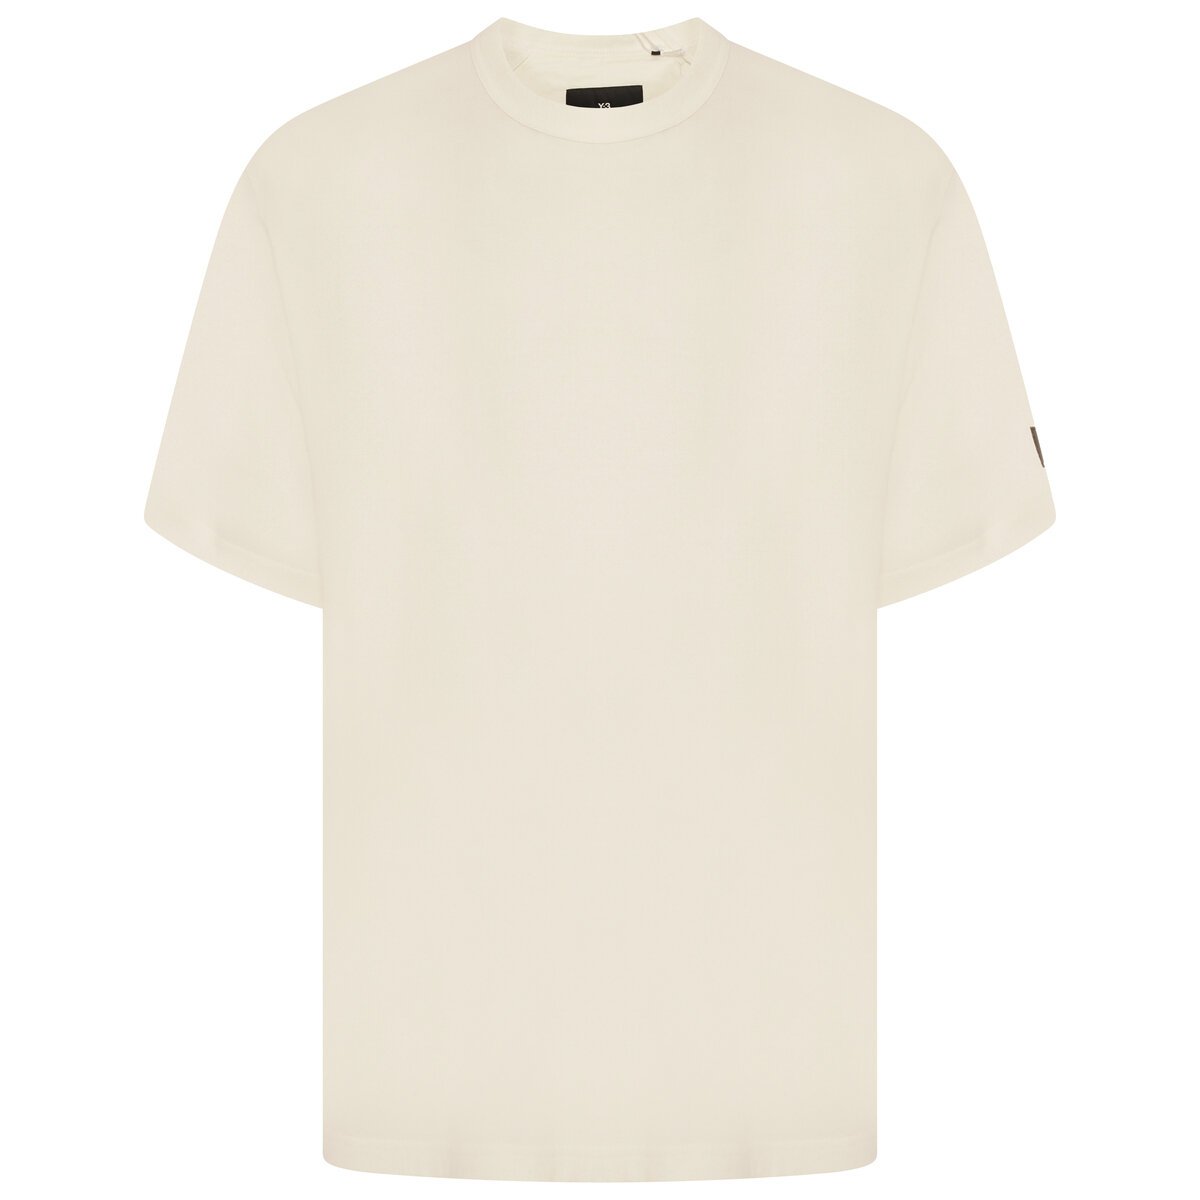 Crepe Jersey Short Sleeve T-shirt Xl Cream